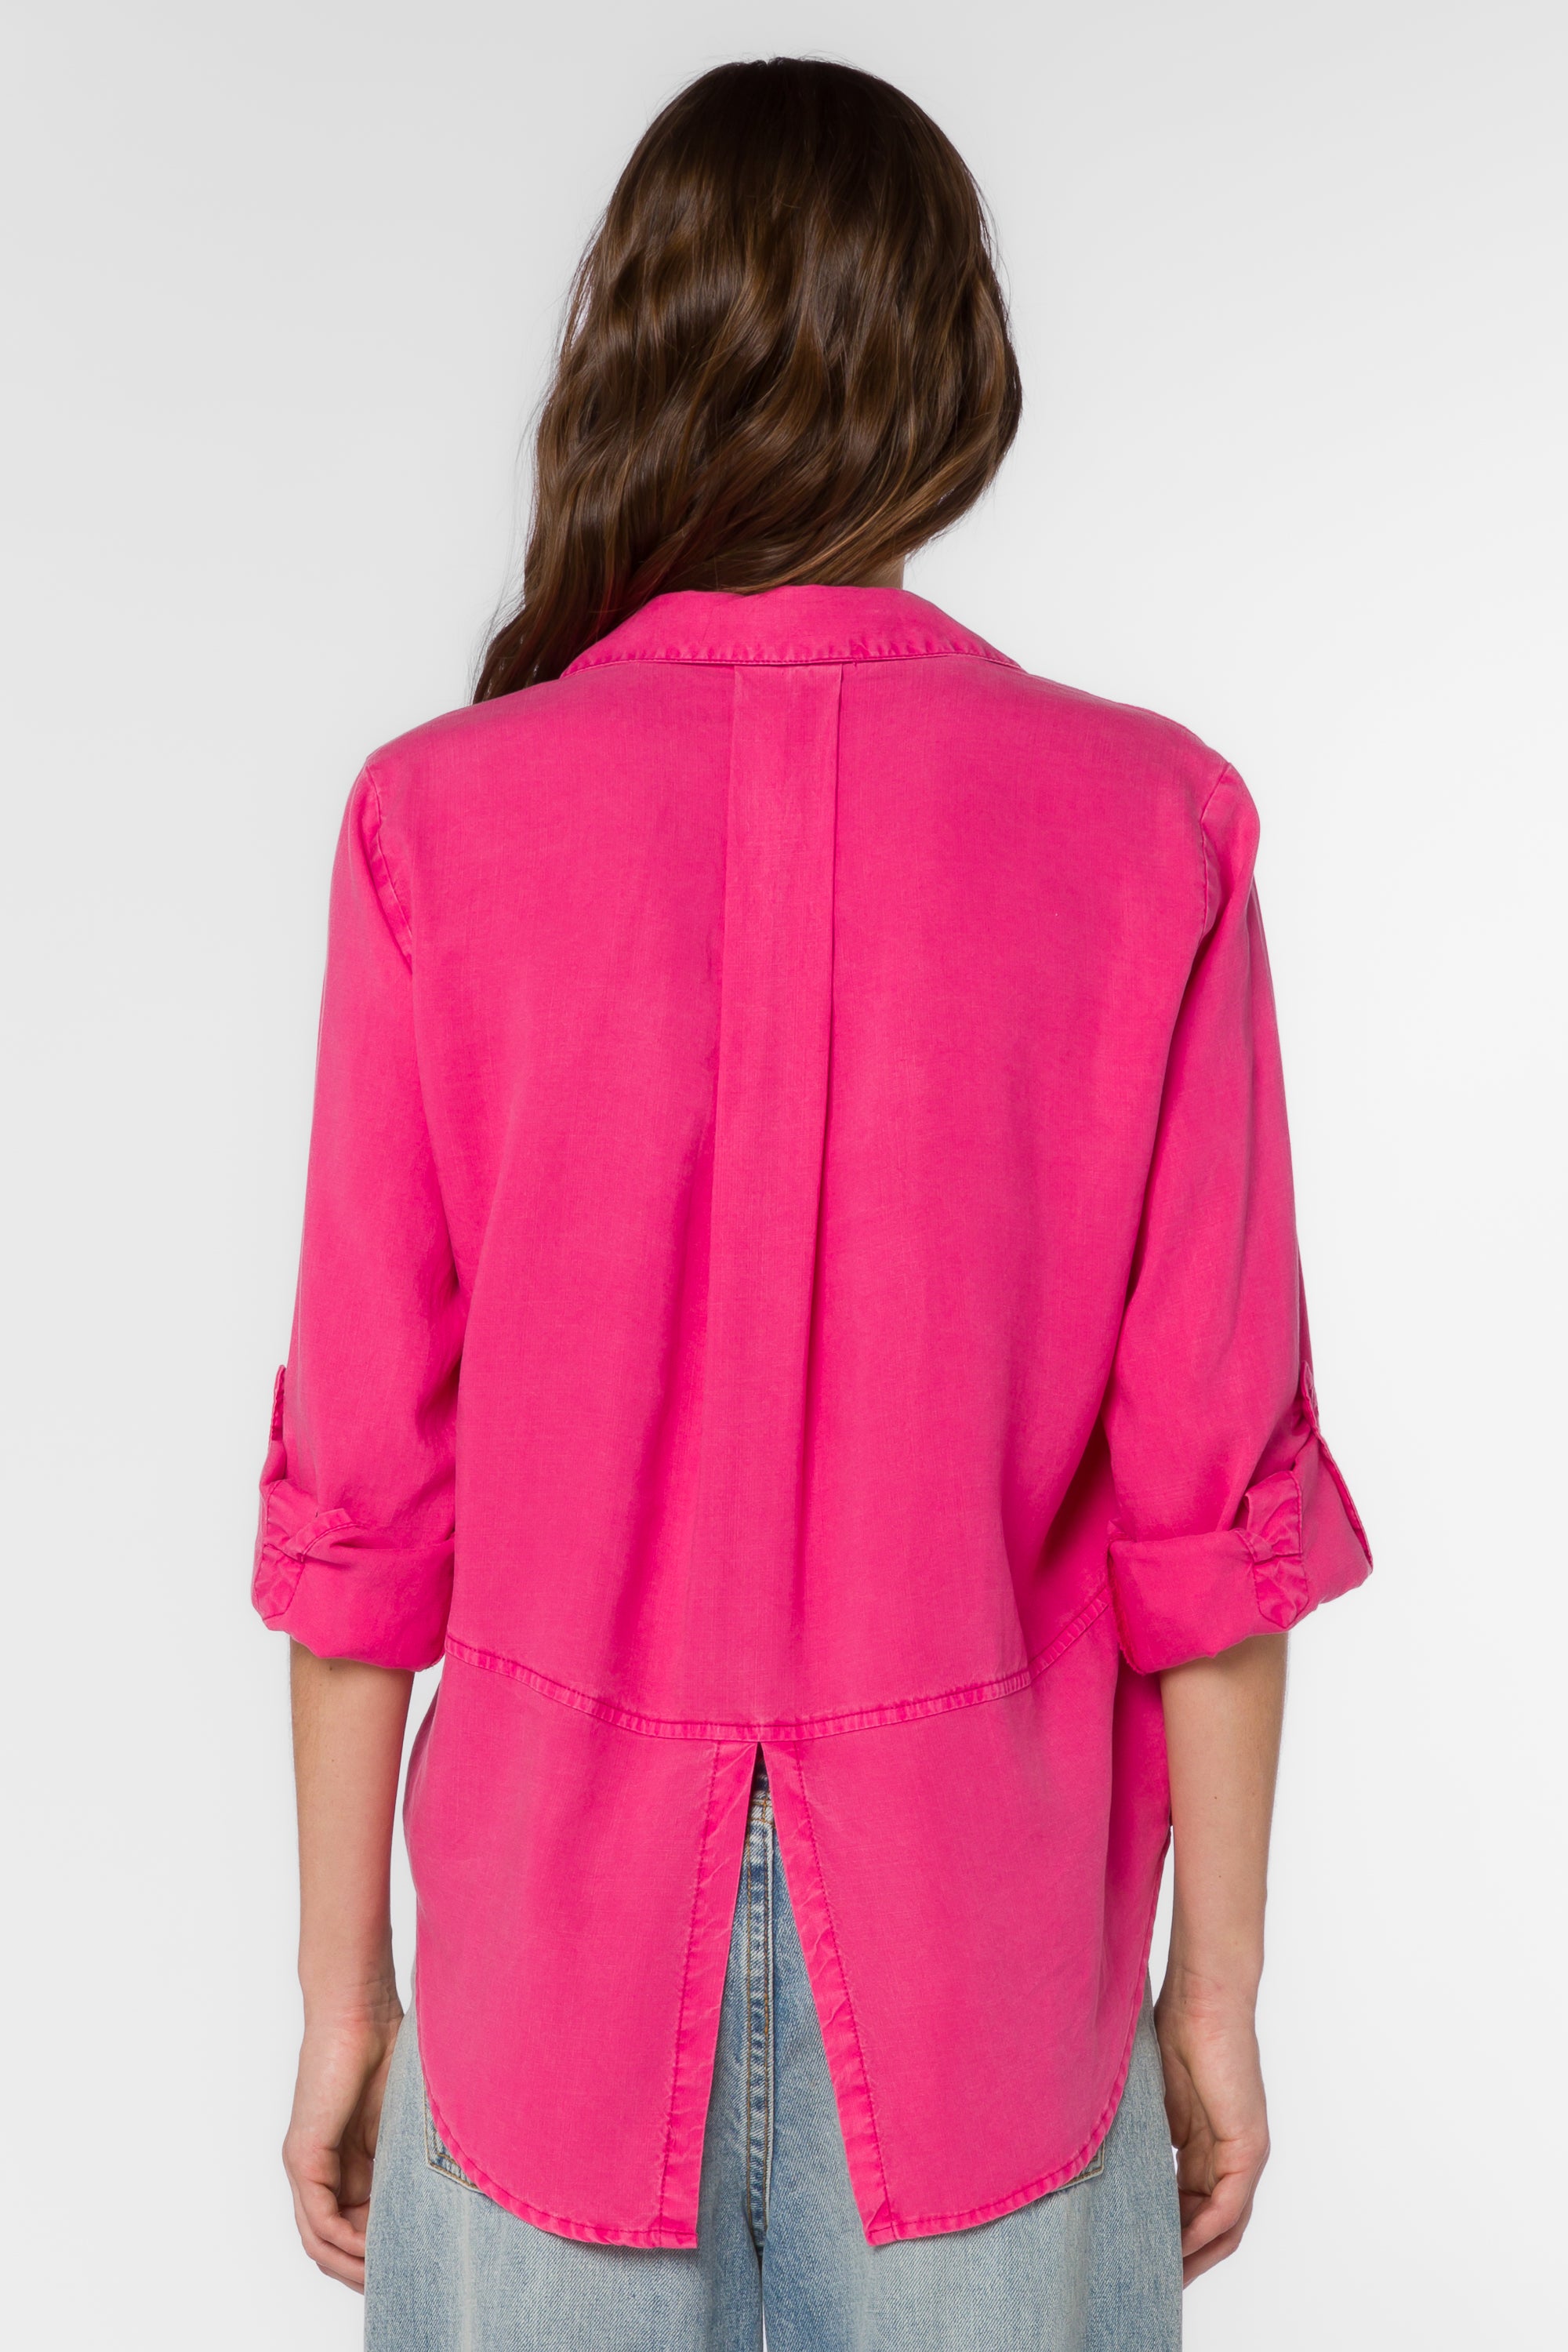 Riley Barbie Pink Shirt - Tops - Velvet Heart Clothing